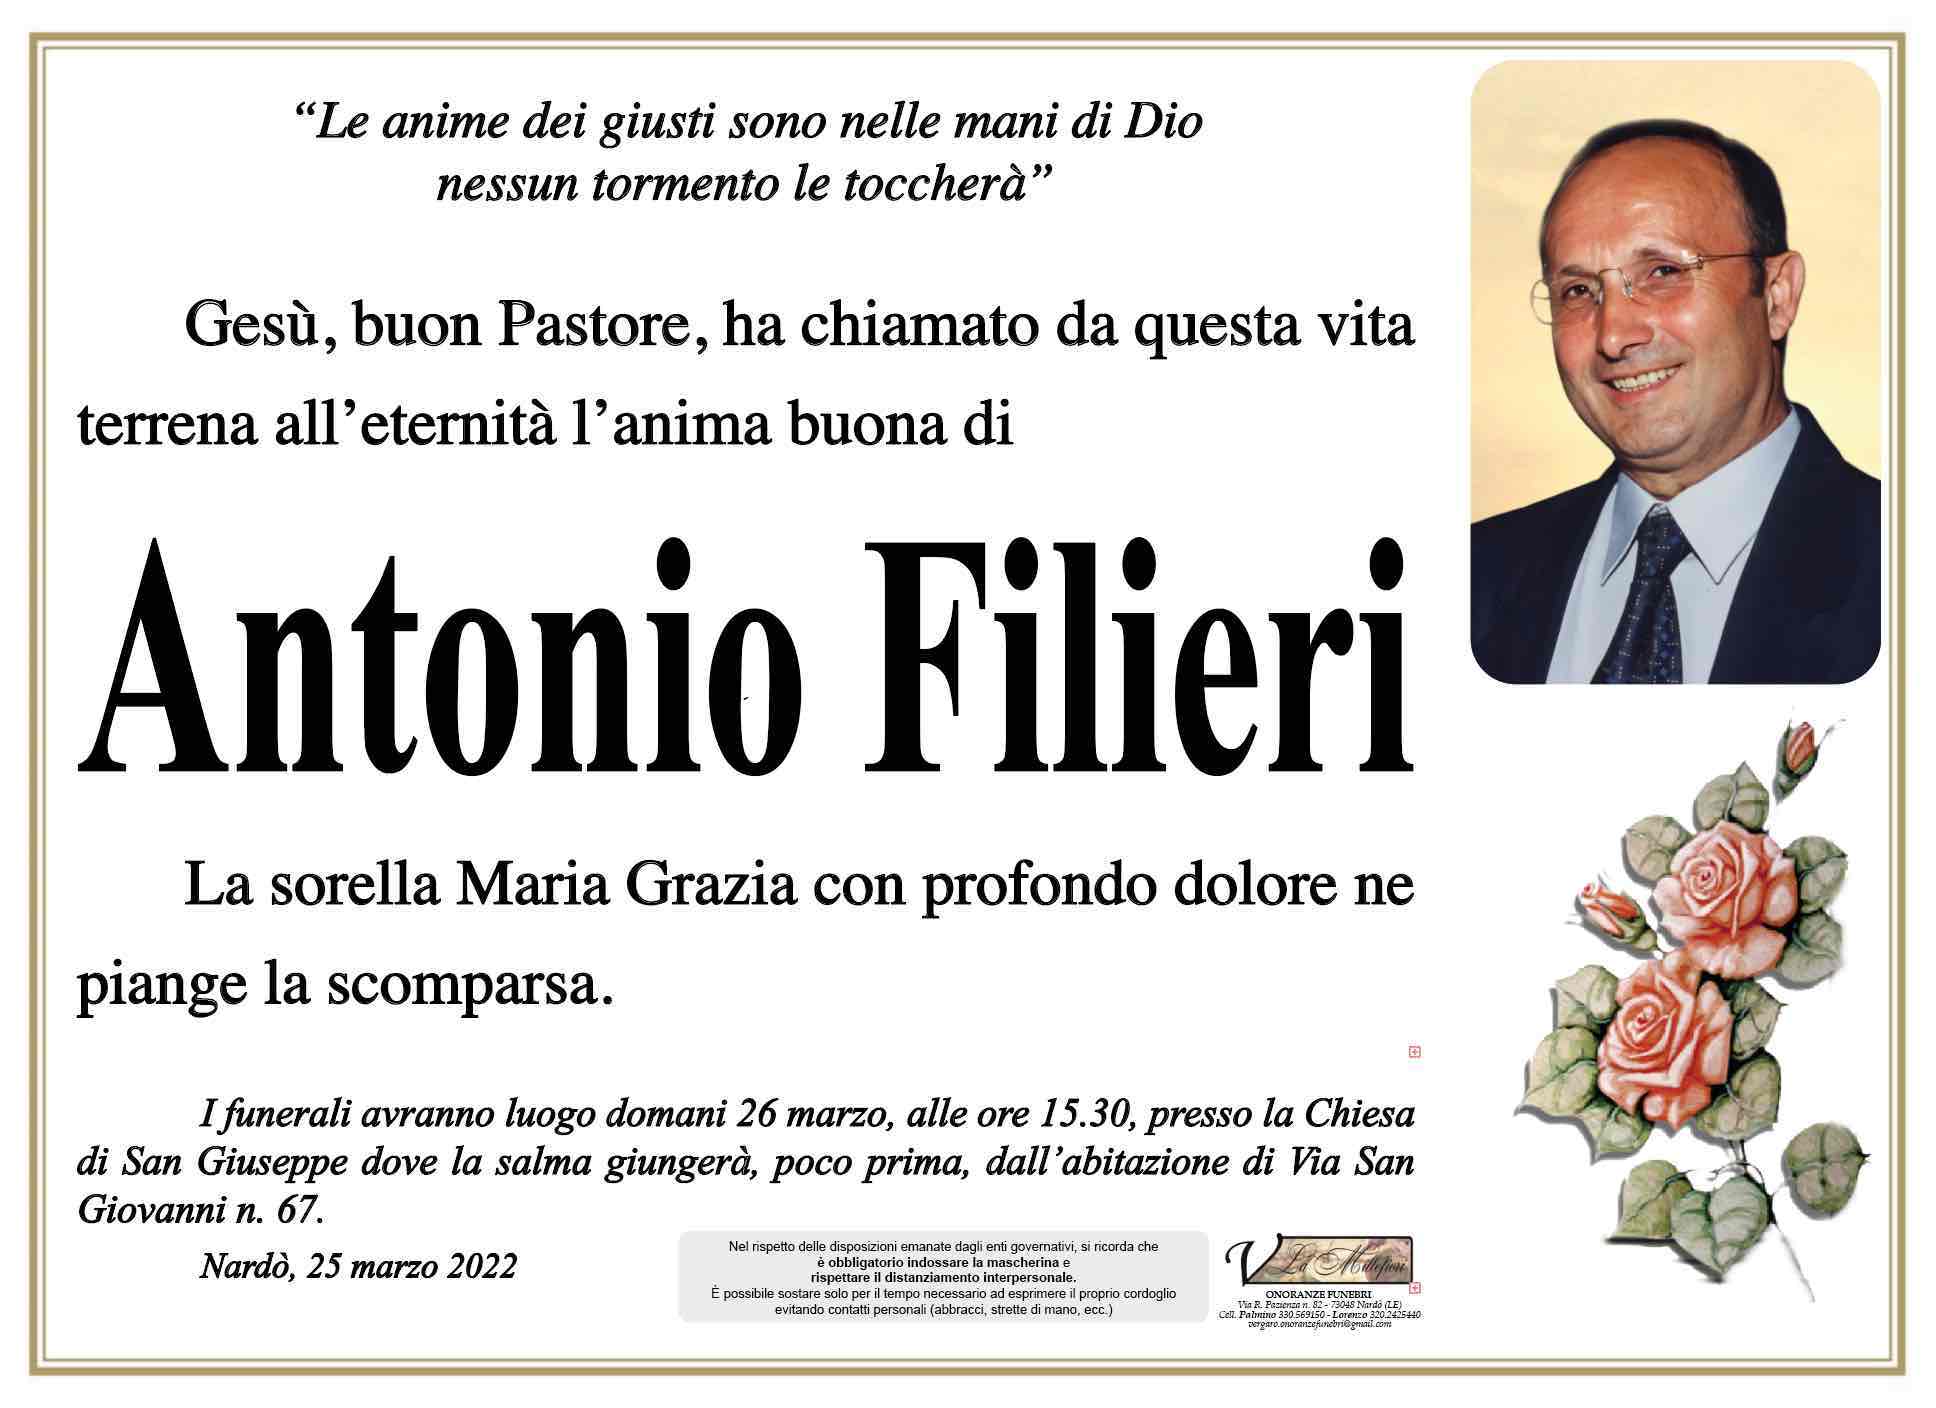 Antonio Filieri